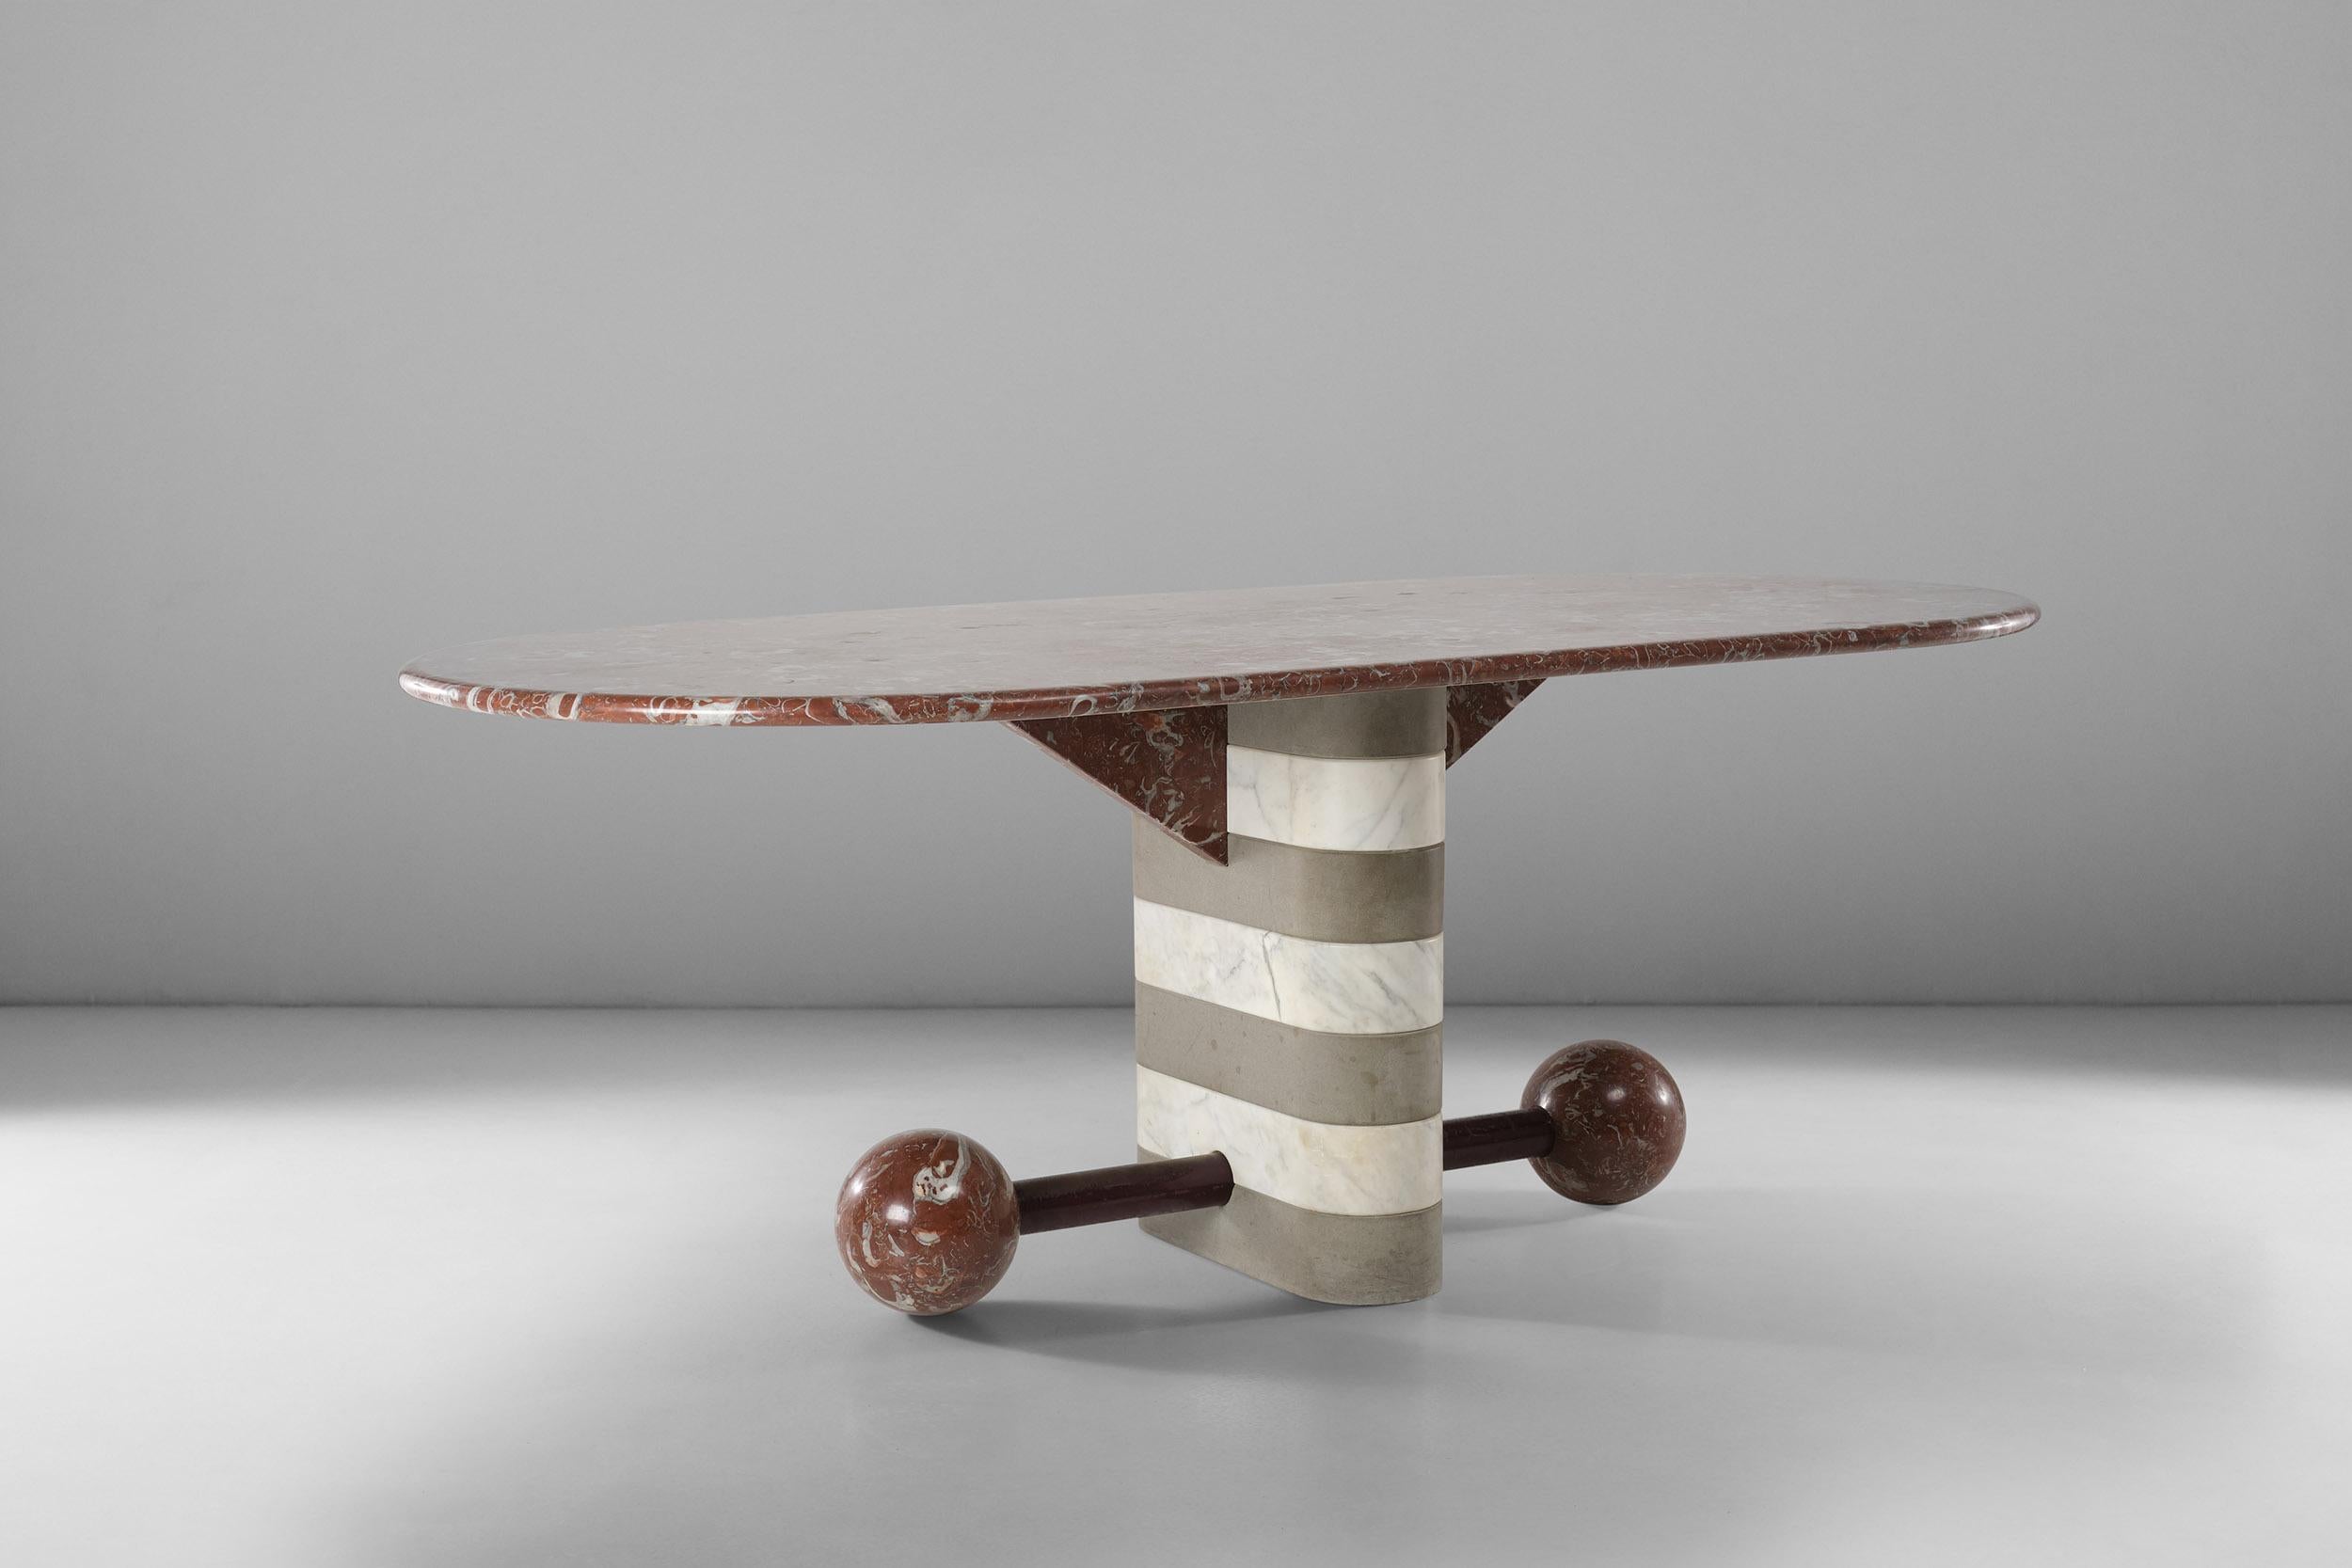 Cette magnifique table en marbre et pierre serena a été conçue par Michele de Lucchi en 1982 pour Memphis. Iconique et vraiment unique dans ses formes, c'est un exemple exceptionnel de design postmoderne. Son pied unique arrondi dans un motif rayé